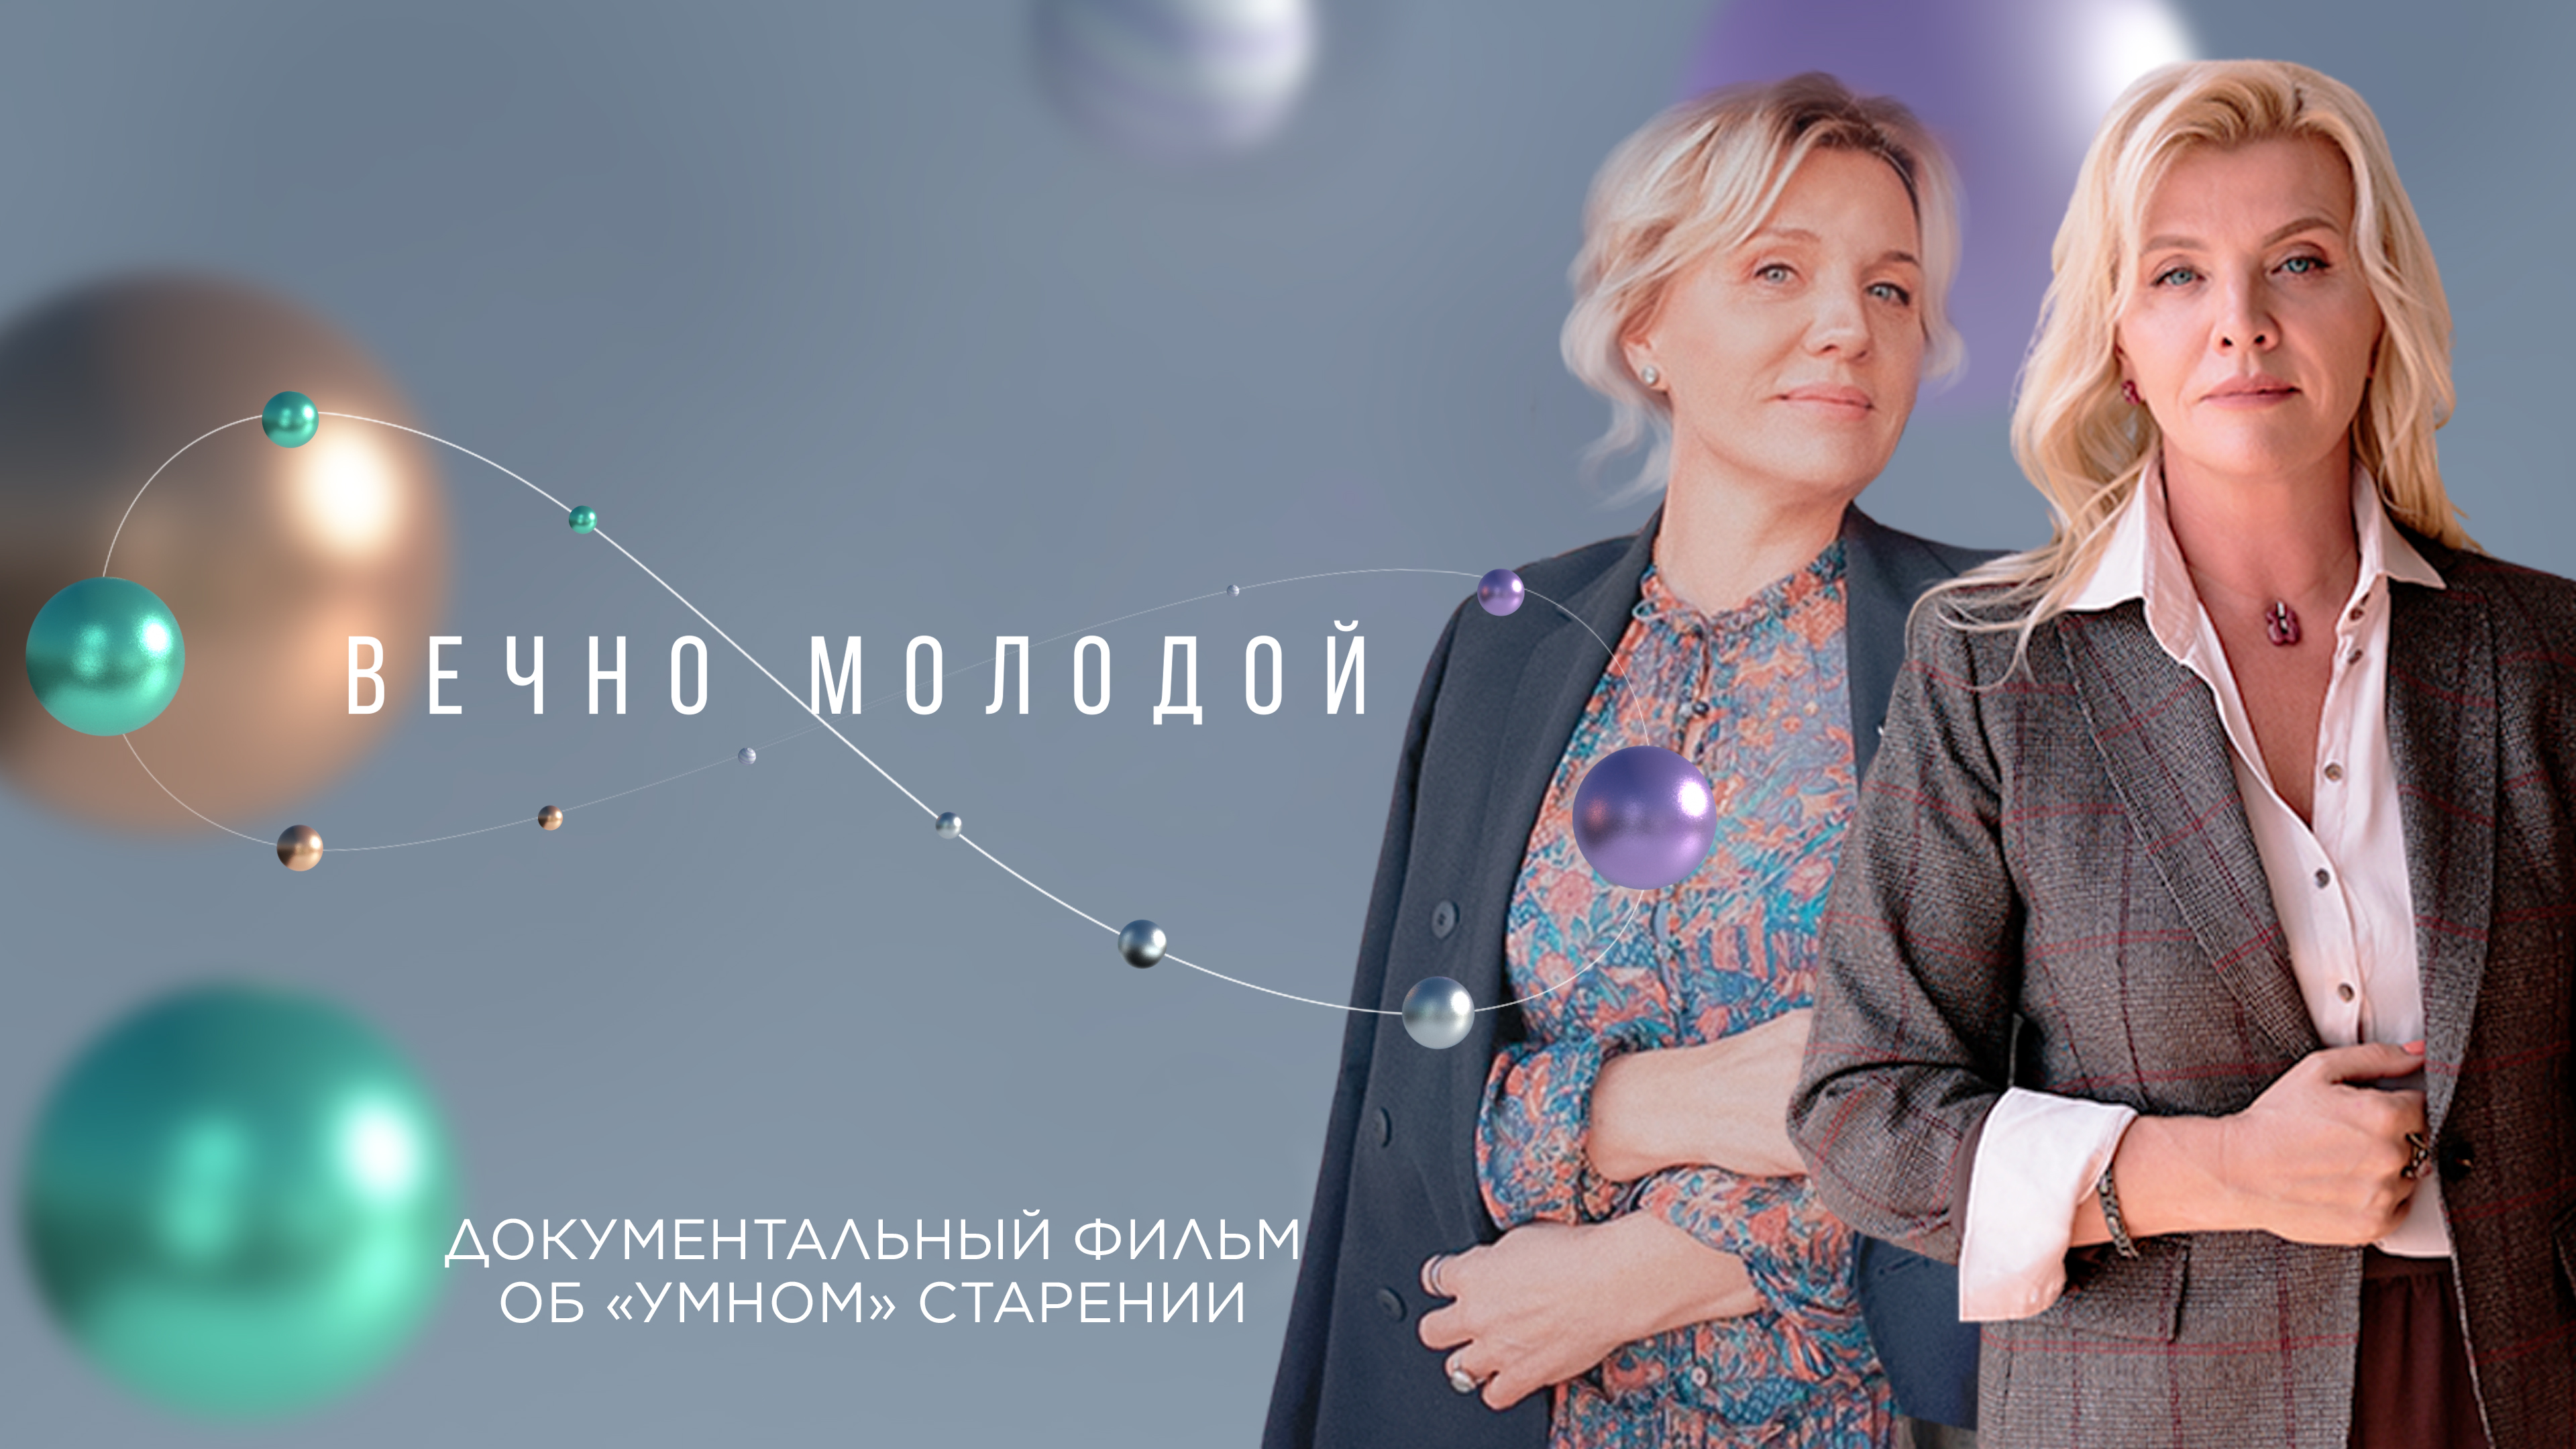 На онлайн-платформе «Кинопоиск» выходит фильм «Вечно молодой», созданный при поддержке Siberian Wellness